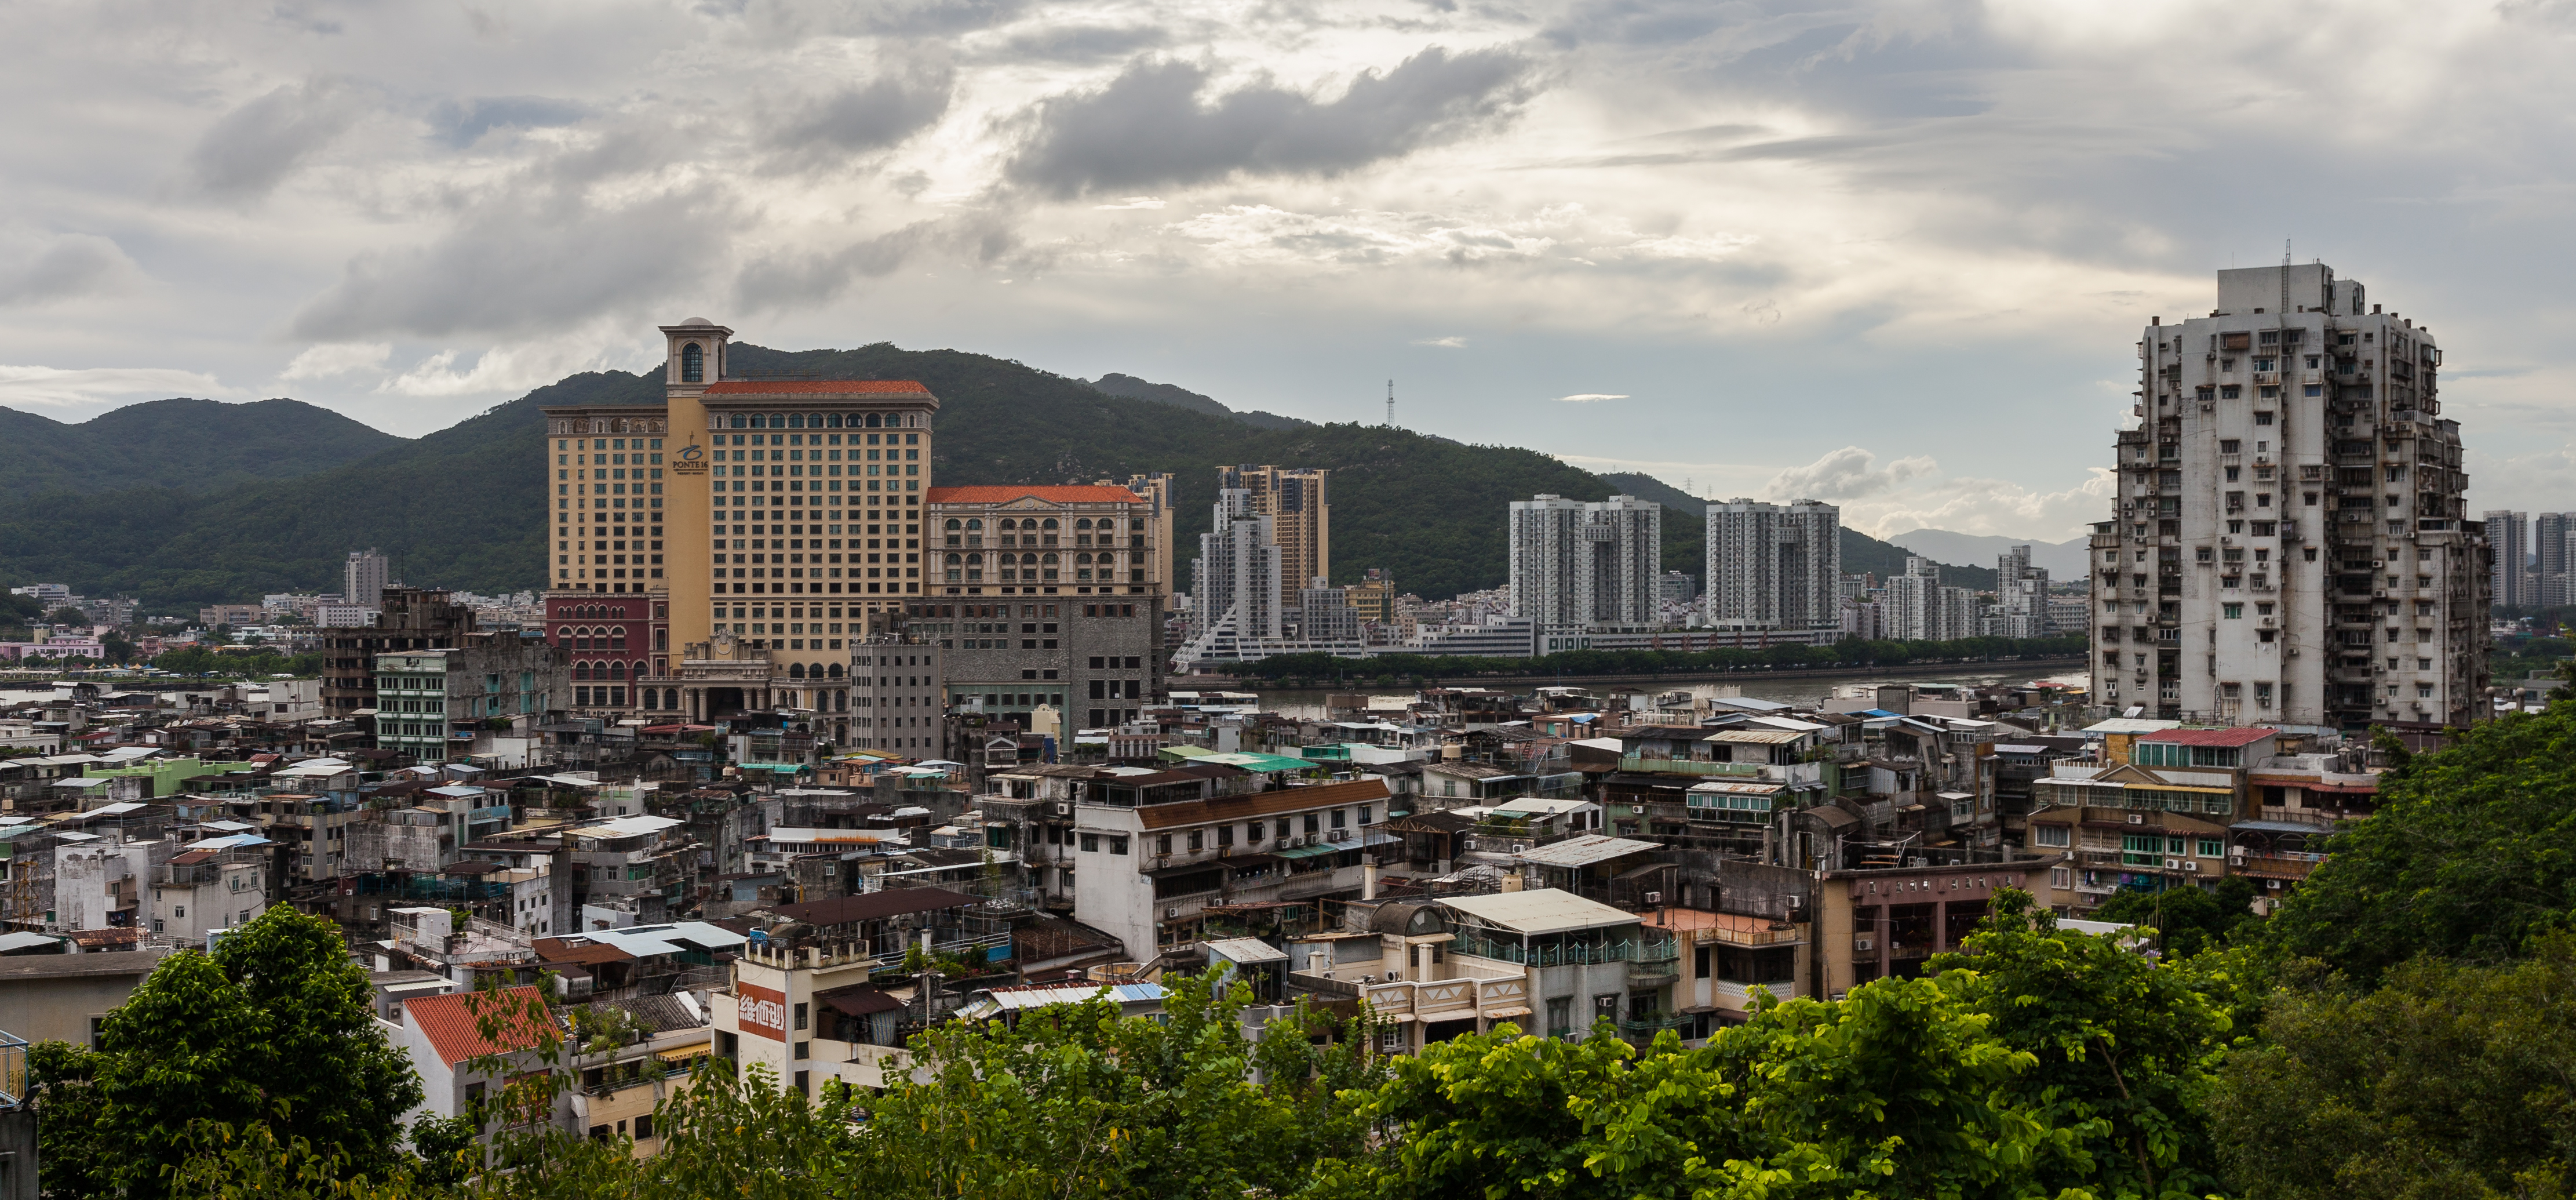 Vistas de Macao, 2013-08-08, DD 01